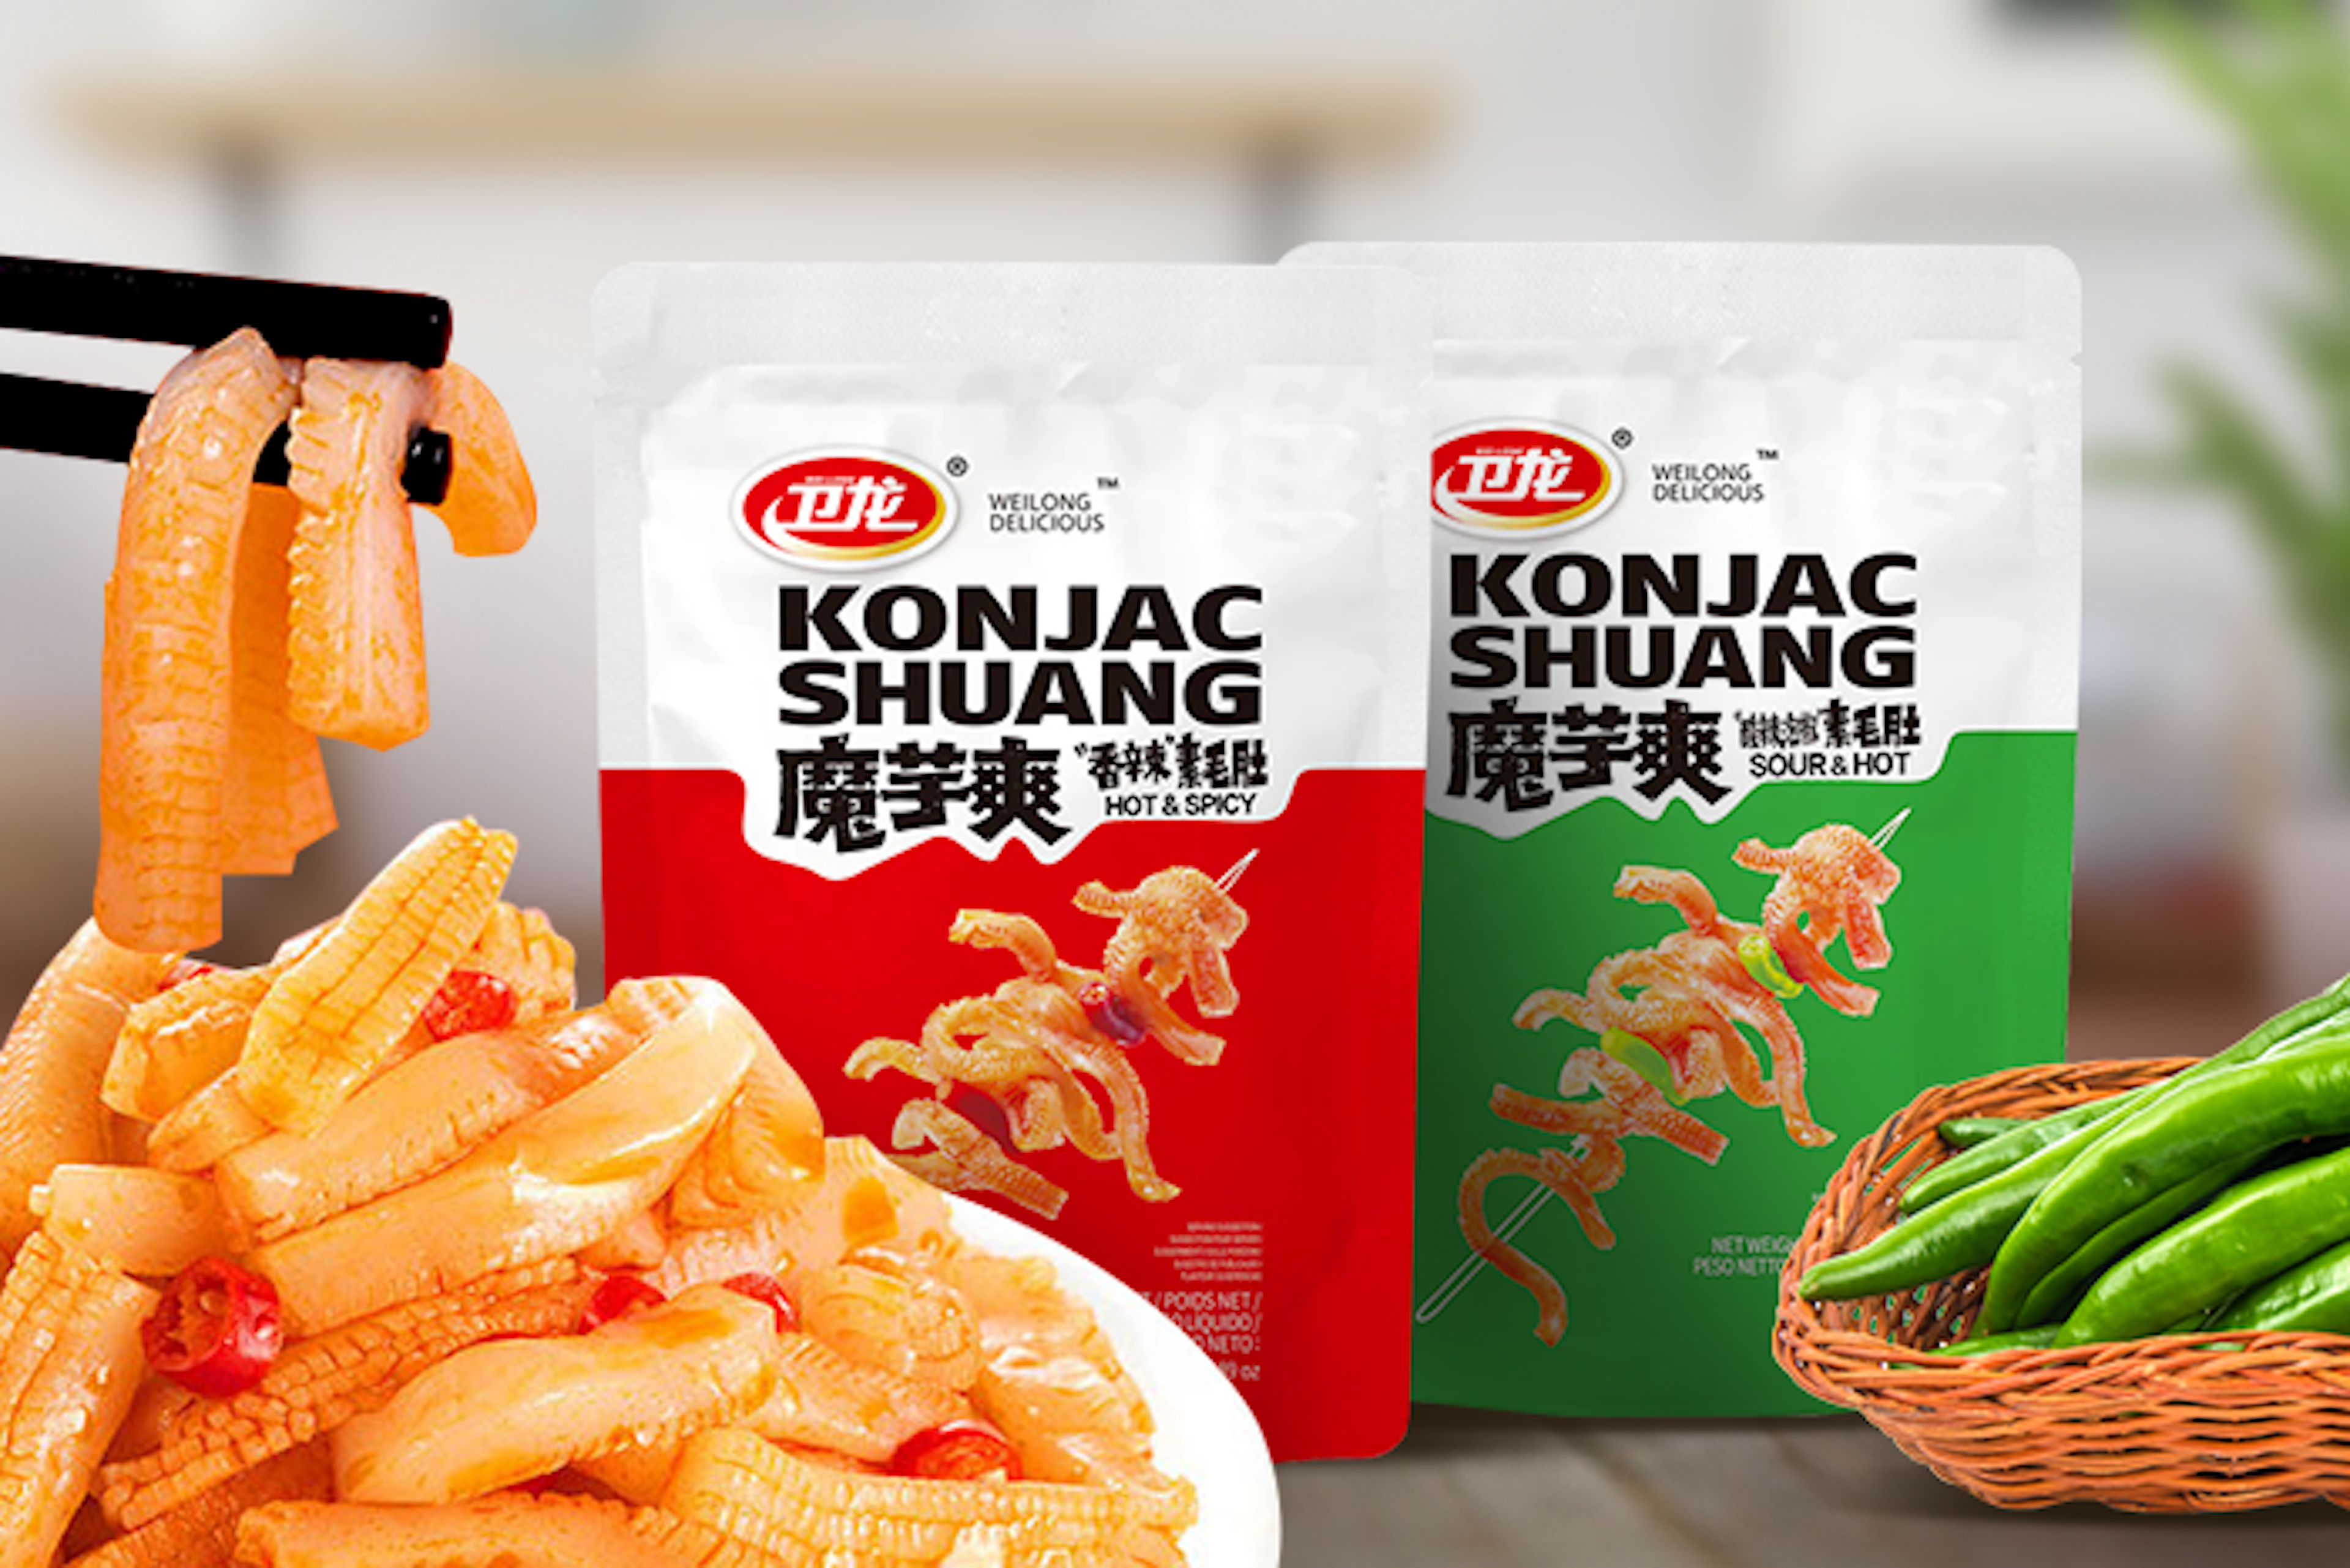 Nahaufnahme des Konjac Shuang Hot & Spicy Snacks auf einem Teller.